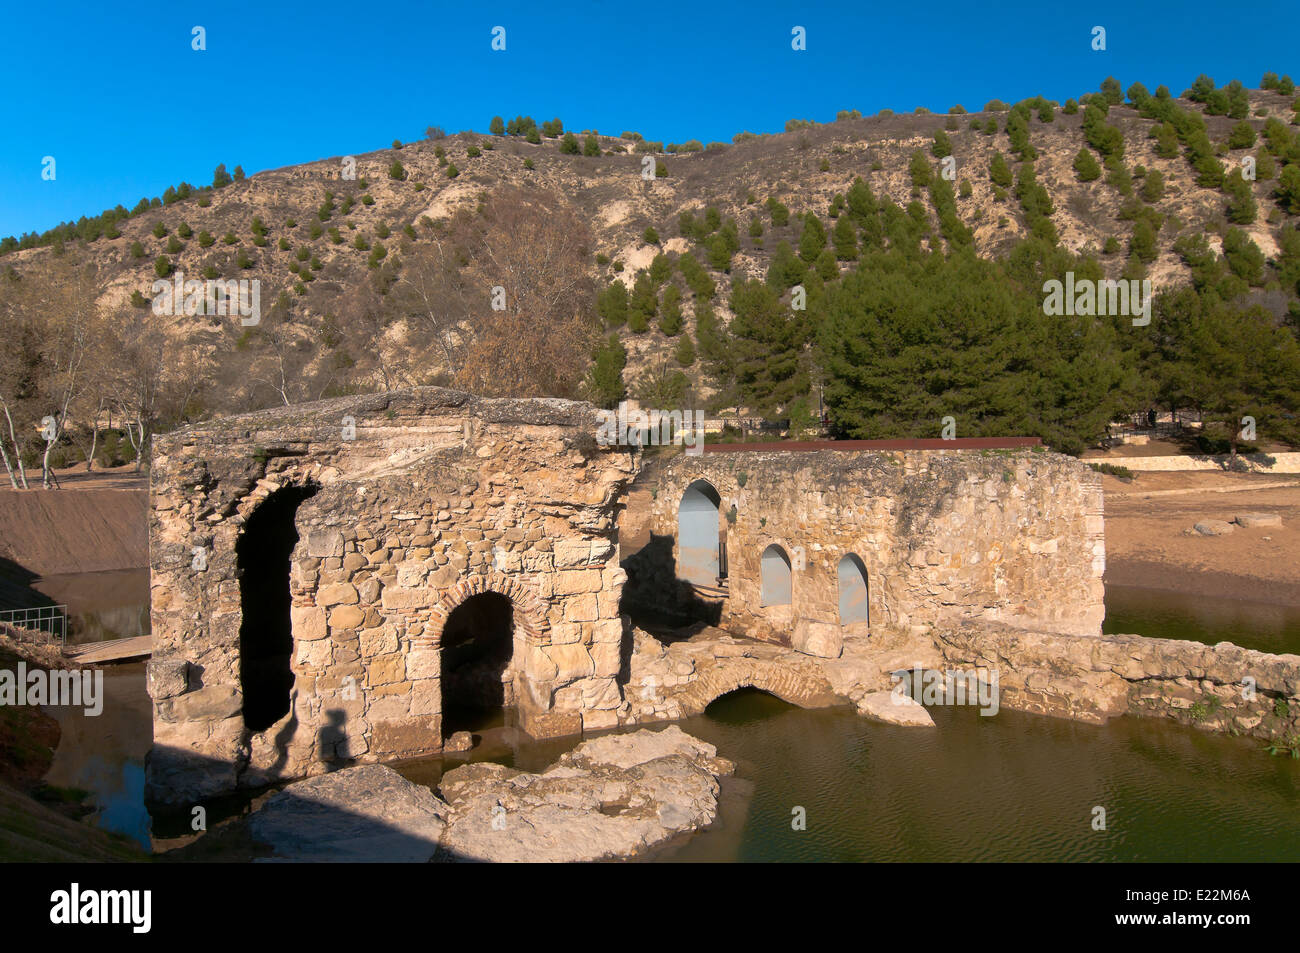 Antico mulino ad acqua, arabo, il percorso turistico dei banditi, jauja, in provincia di Cordoba, regione dell'Andalusia, Spagna, Europa Foto Stock